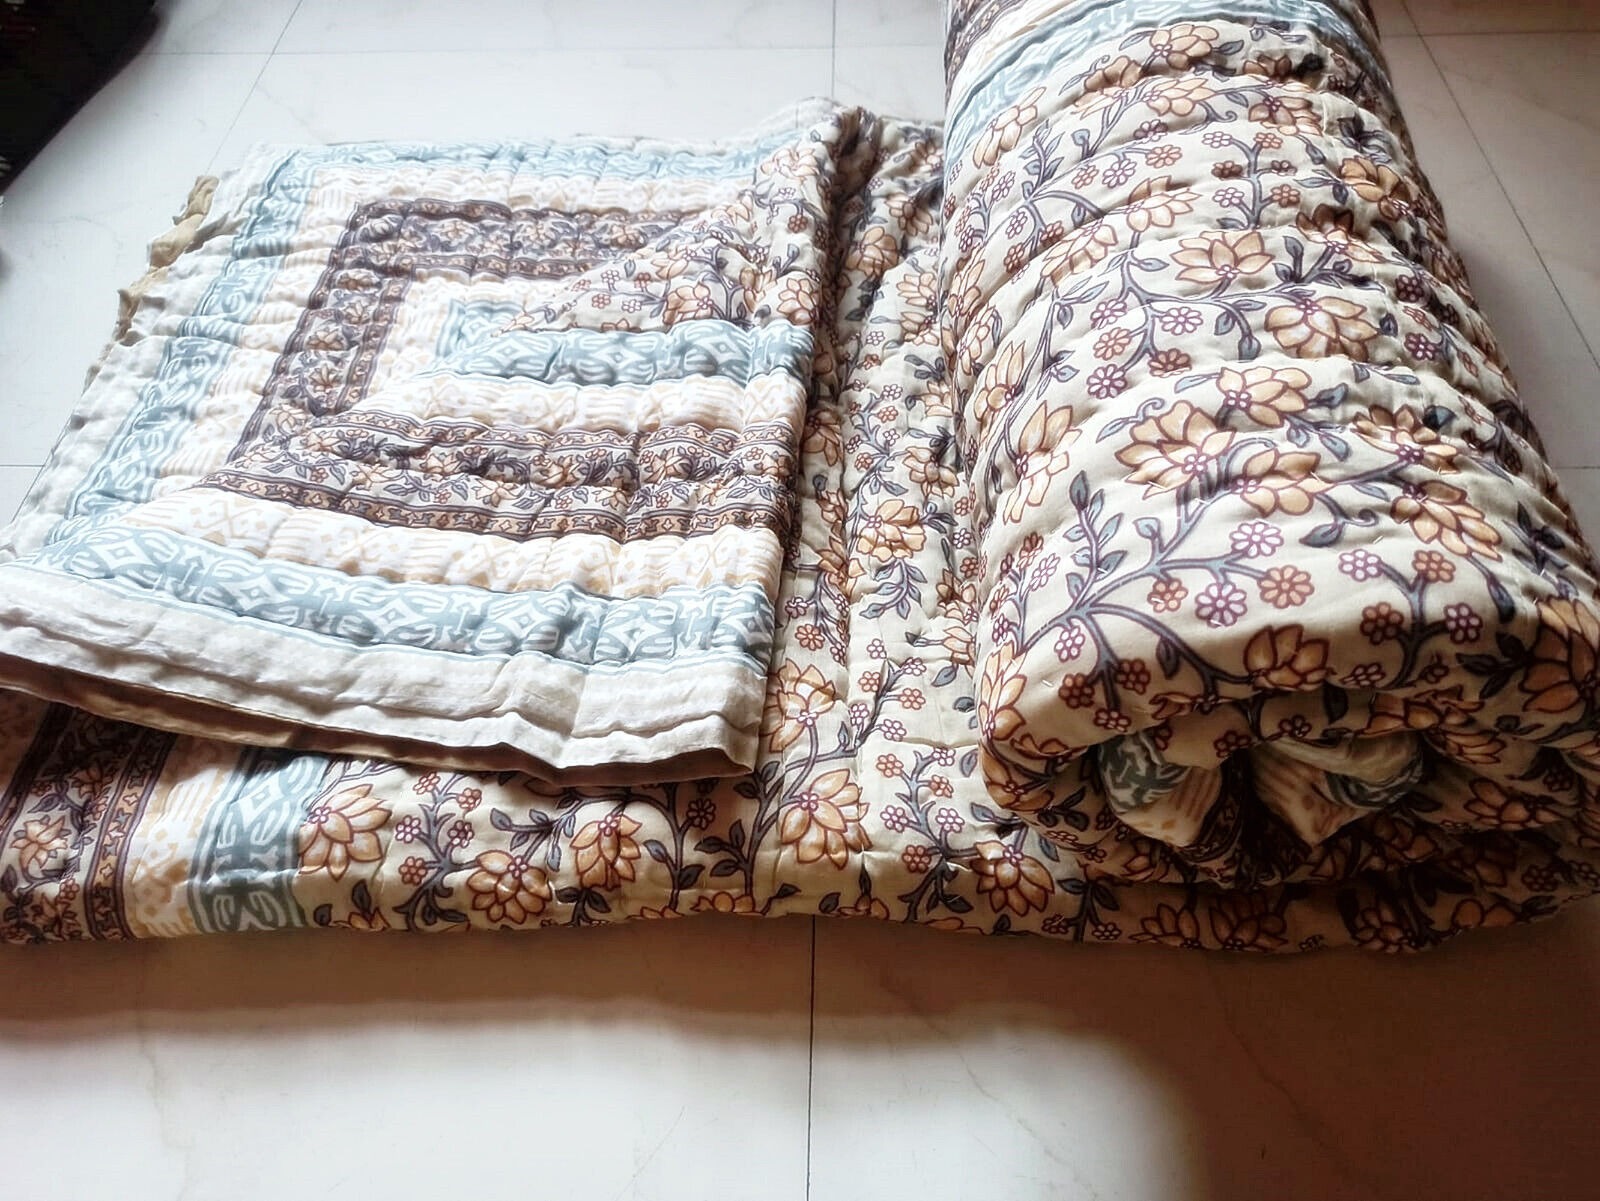 Winter Warm Razai Quilt, Bedspread Quilt Ethnic Hand Block Print Coverlet Quilt